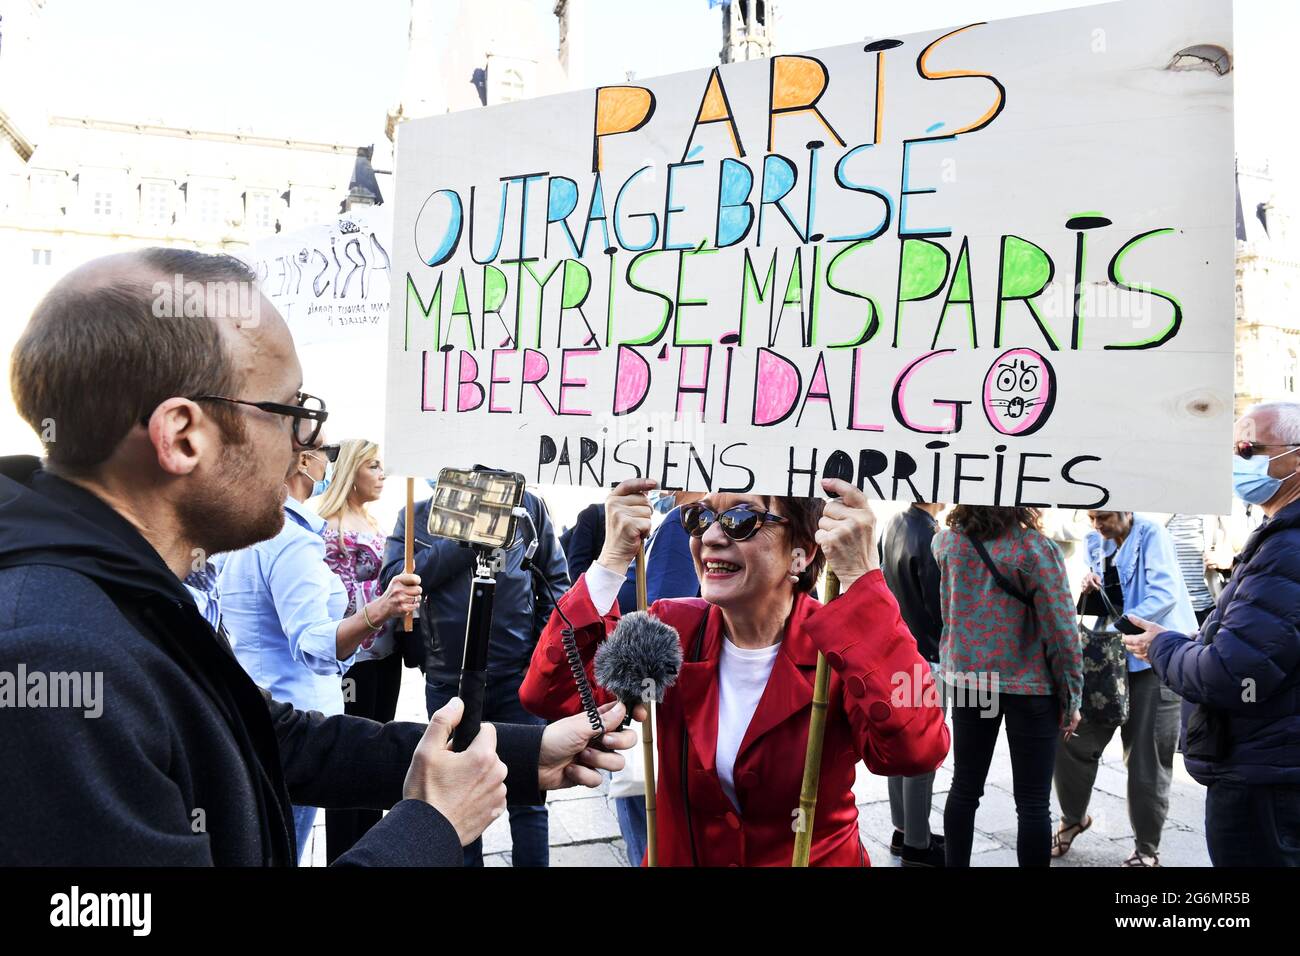 #Saccage Paris Protest in front of Hôtel de Ville of Paris Stock Photo